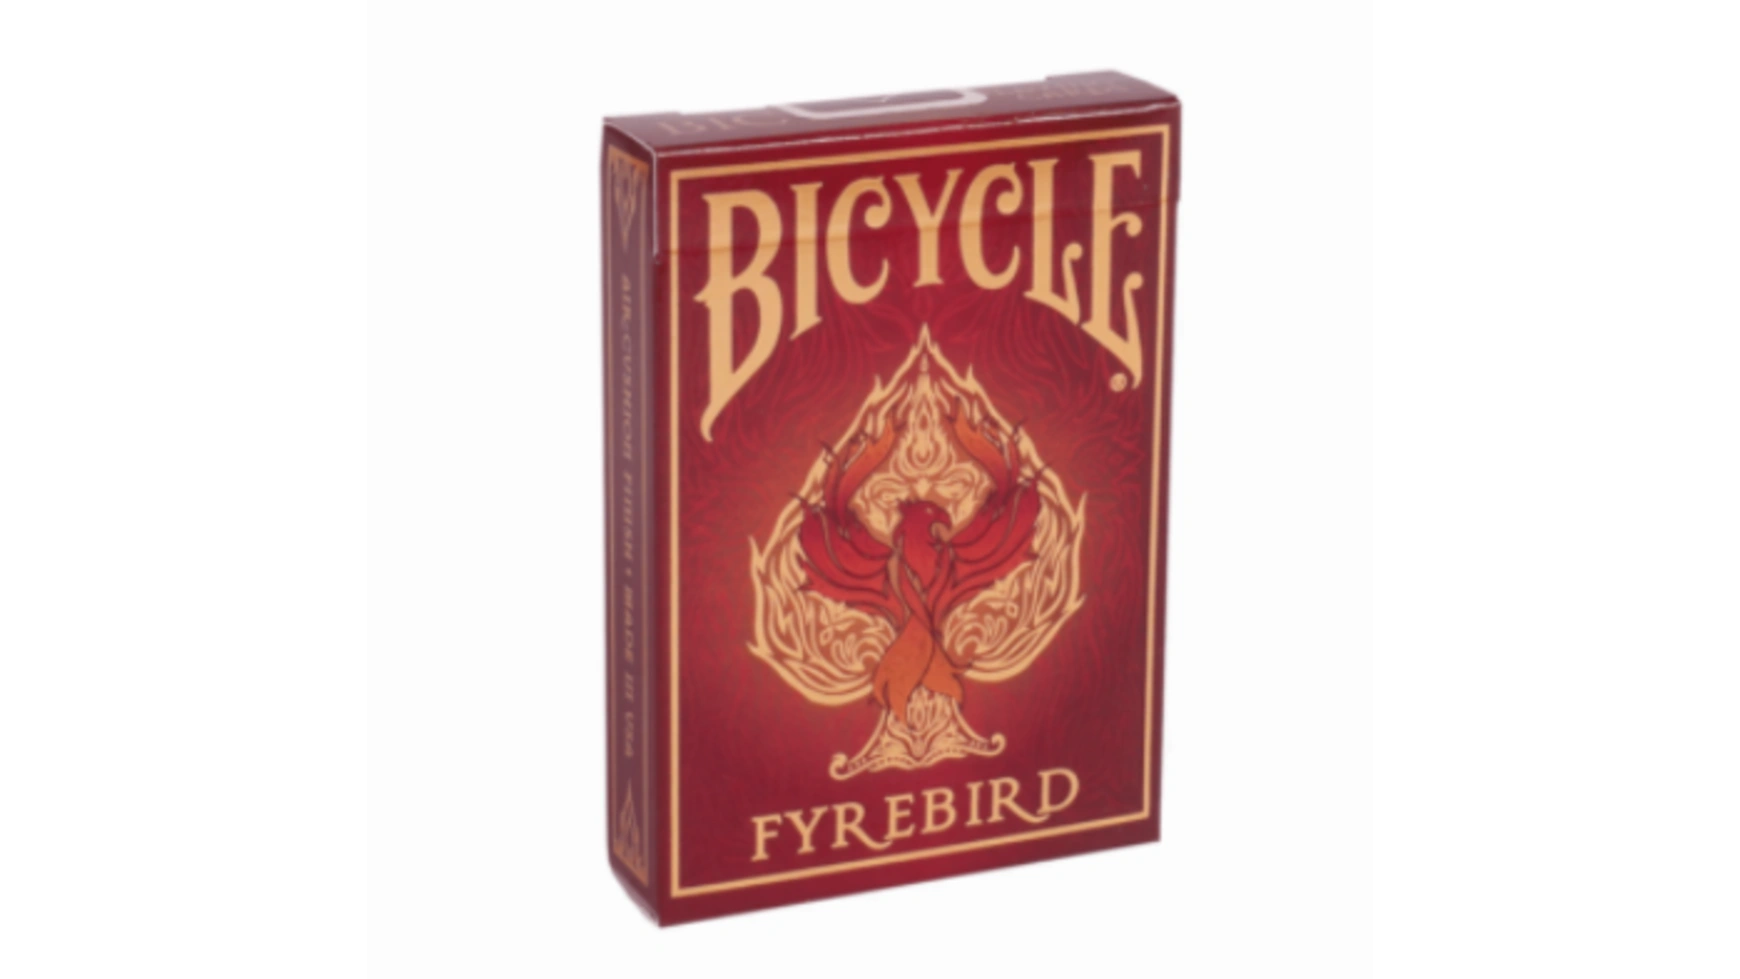 Bicycle игральные карты Fyrebird карты bicycle aristocrat vintage red blue